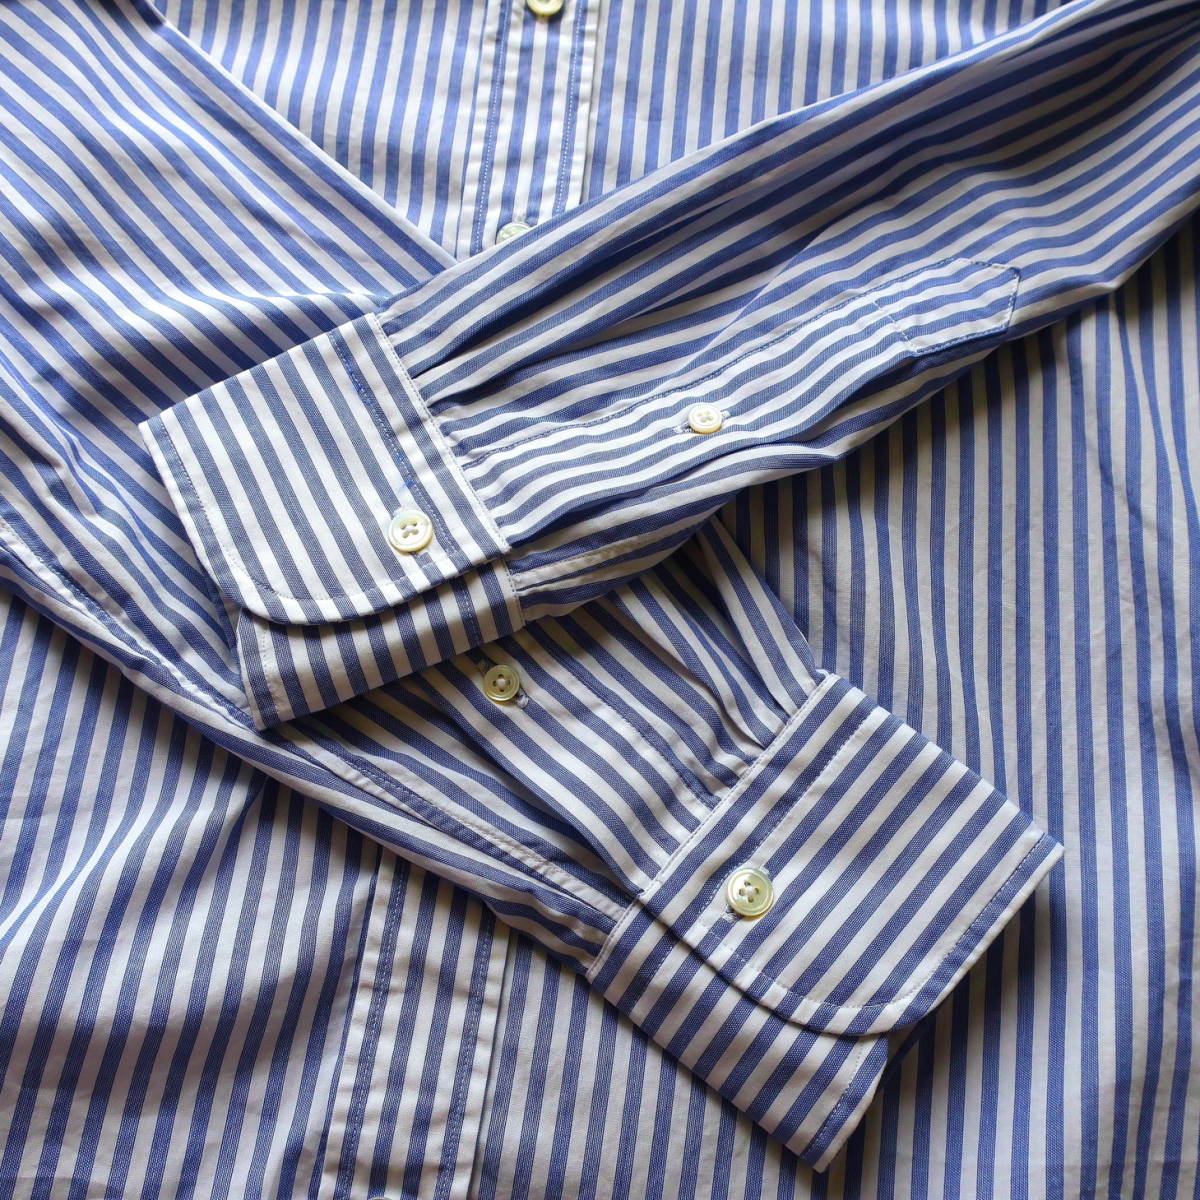 試着のみ BAGUTTA バグッタ メンズ ドレスシャツ ストライプ ワイドカラー 長袖 ボタン ワイシャツ シャツ 青 白 40 Mサイズ Lサイズ 